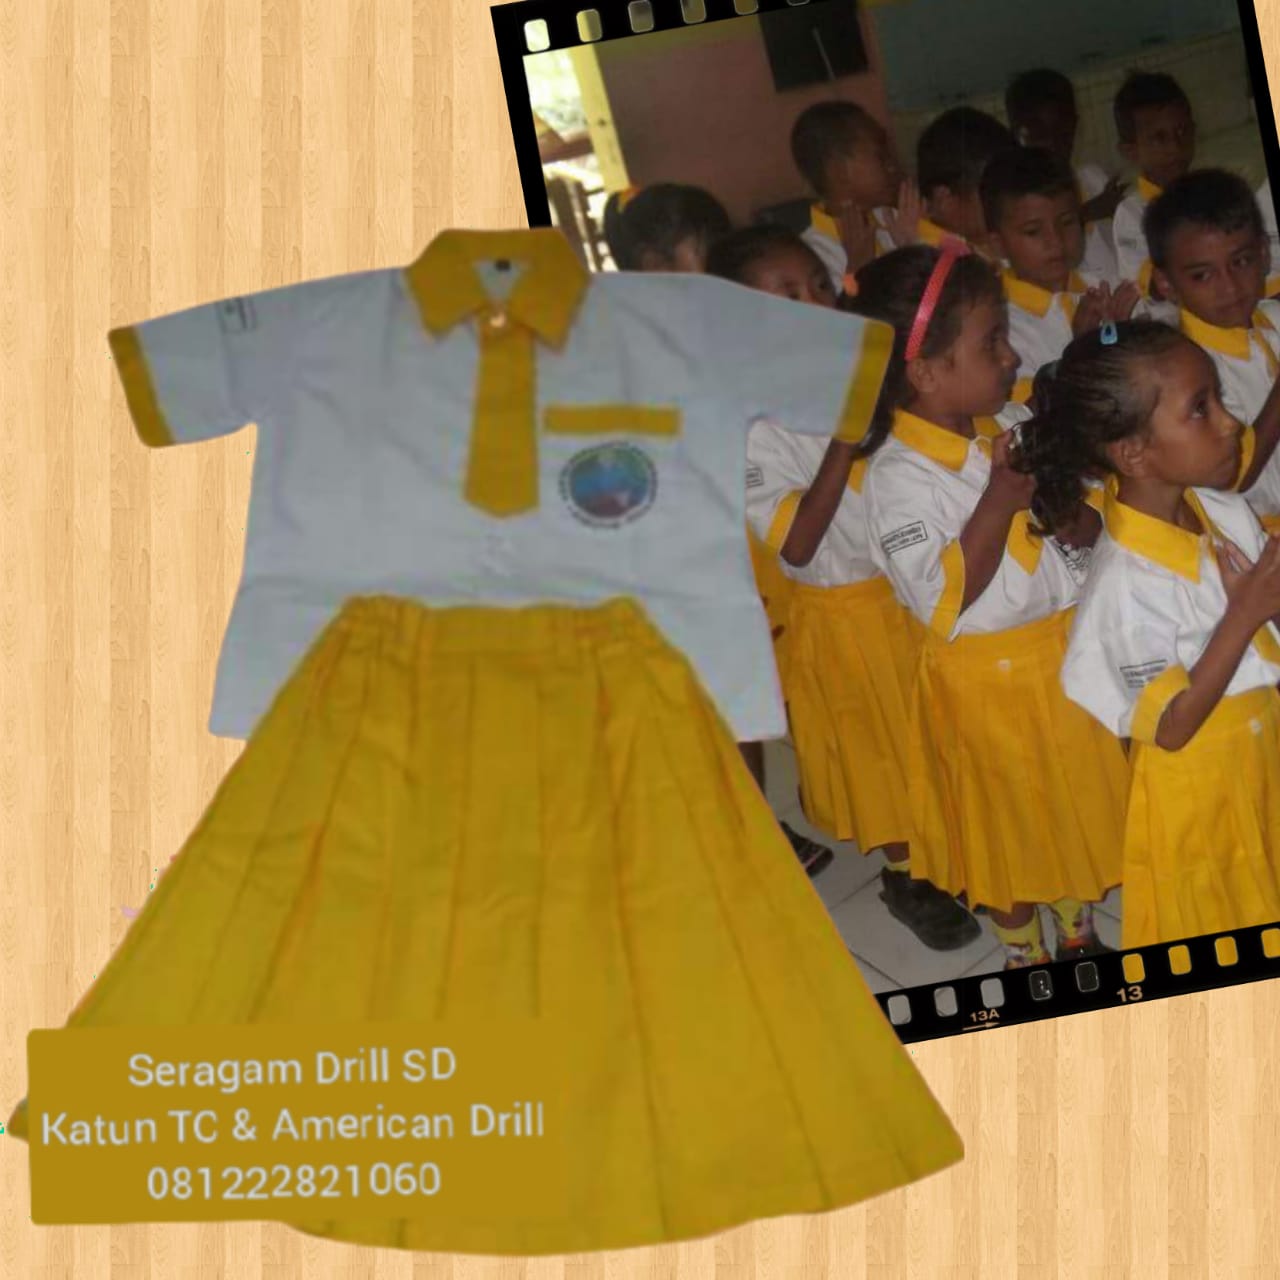 gambar seragam sekolah tk di Dili Timor Leste